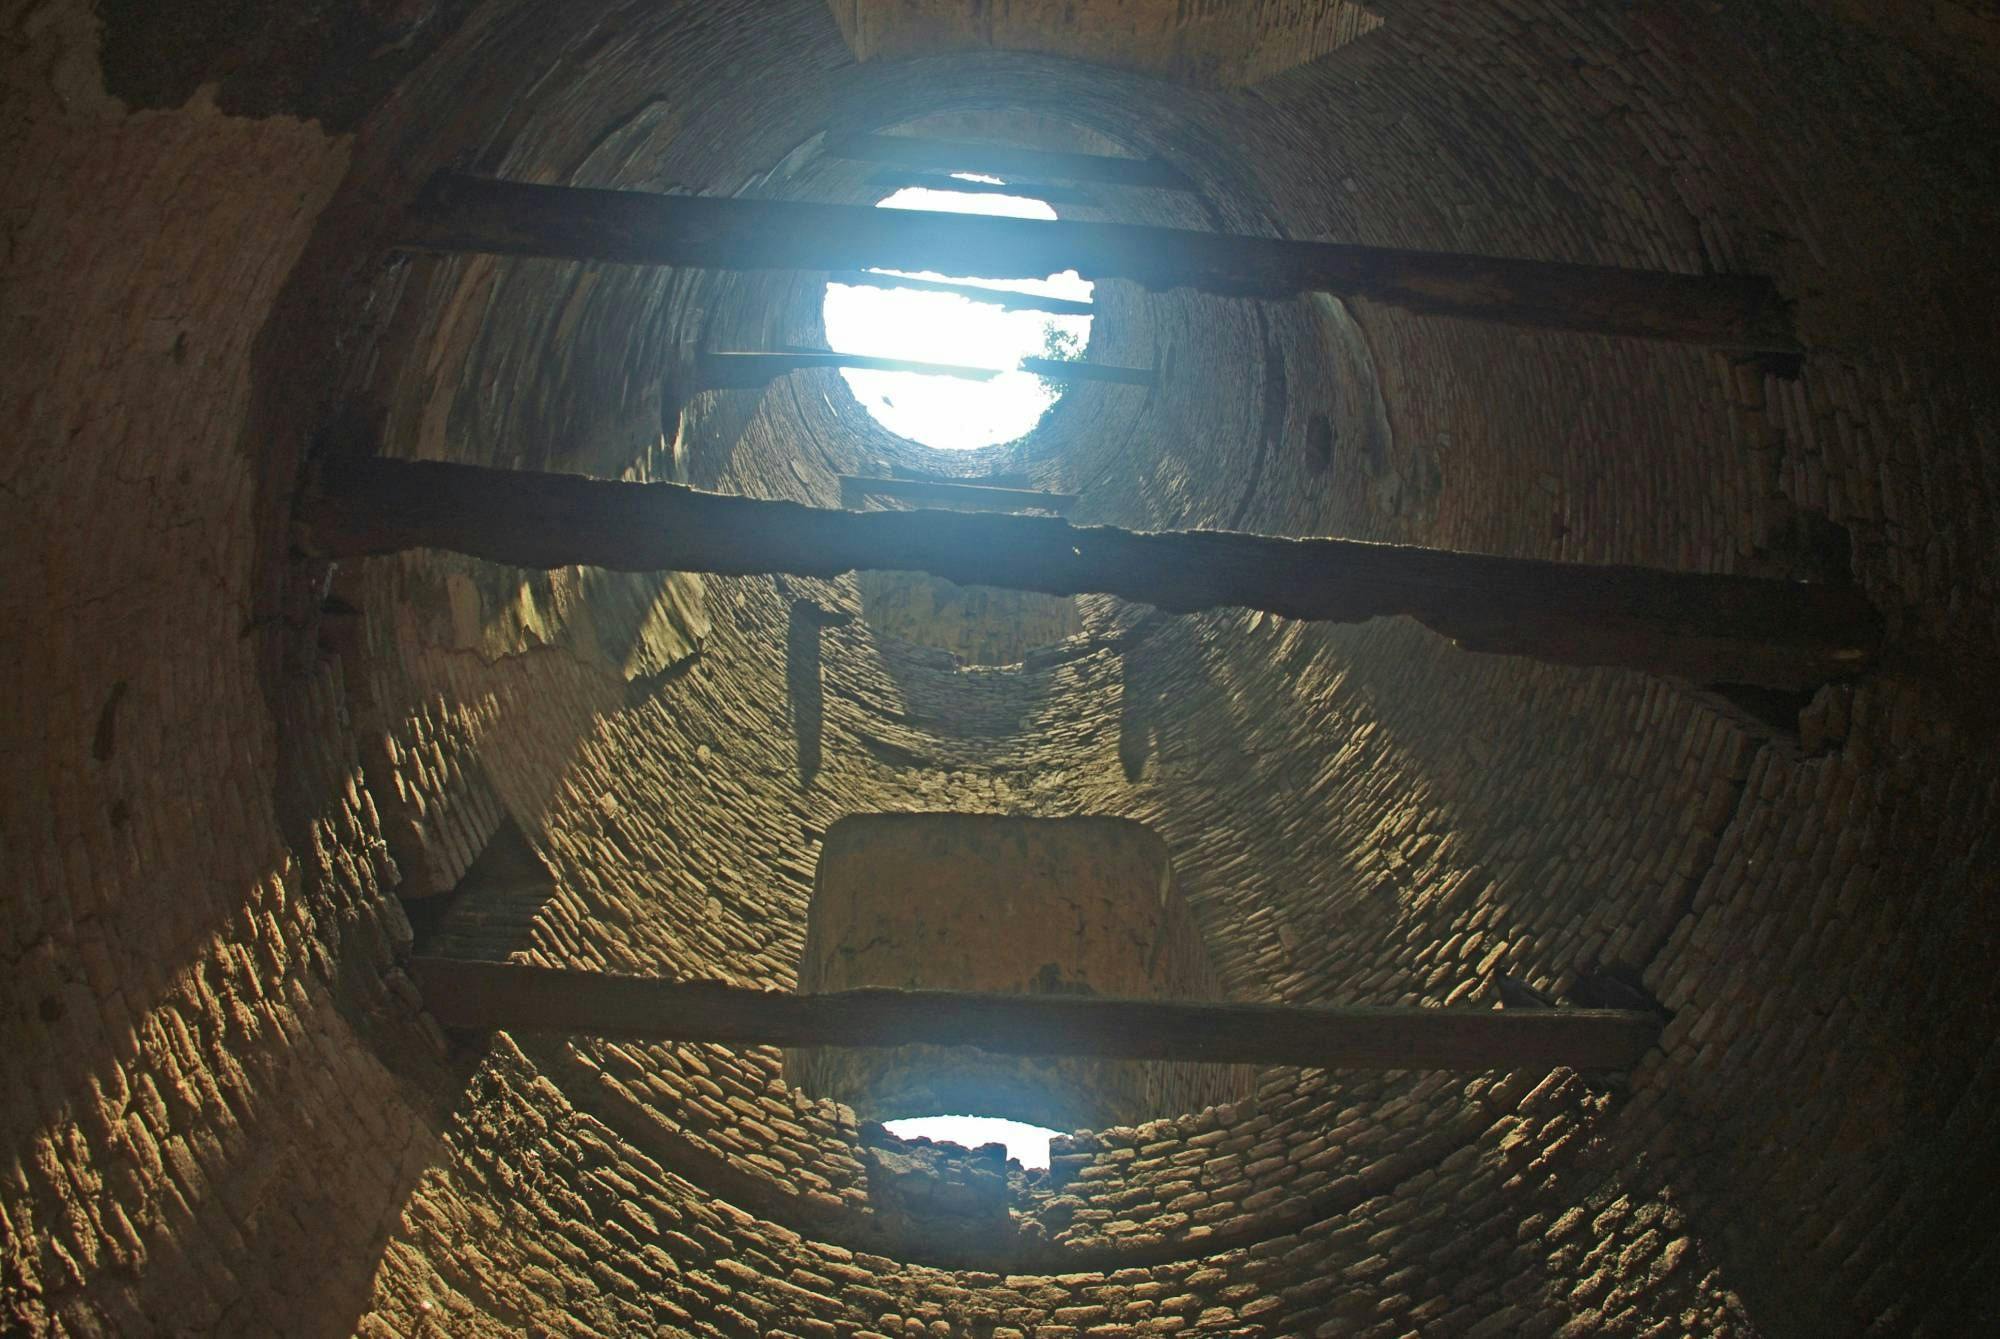 Interiors of Andul Semaphore Tower